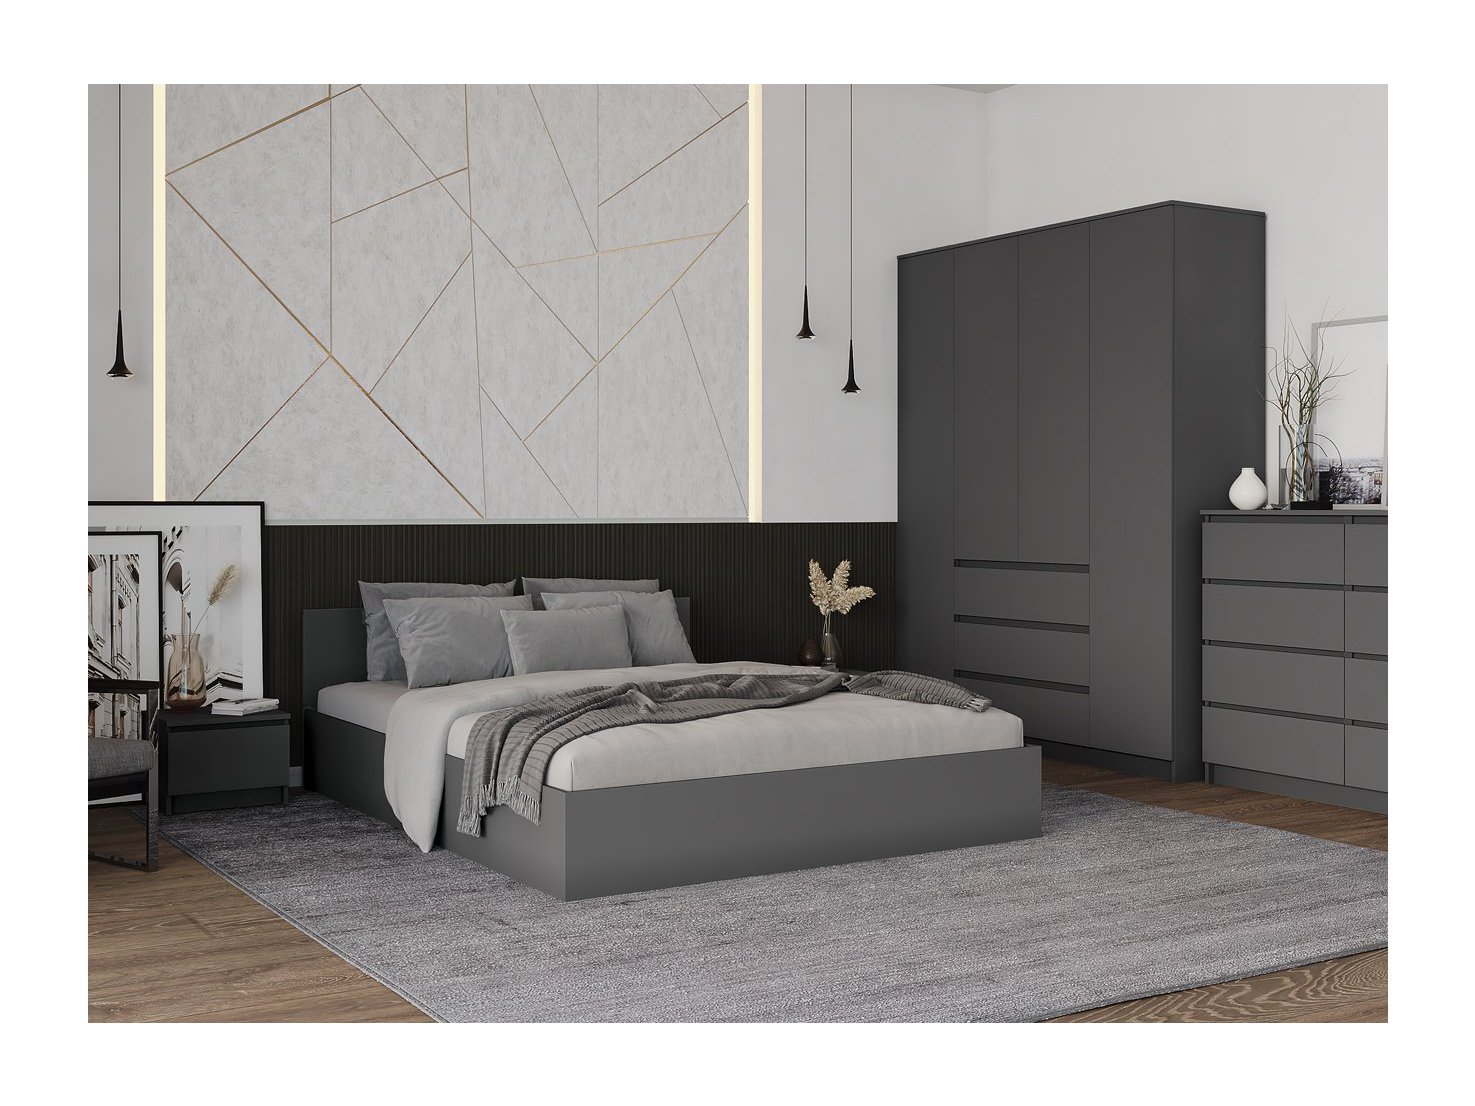 Модульная спальня Мори, композиция 5 (графит) Черный, ЛДСП модульная спальня челси комплектация 1 графит графит черный лдсп